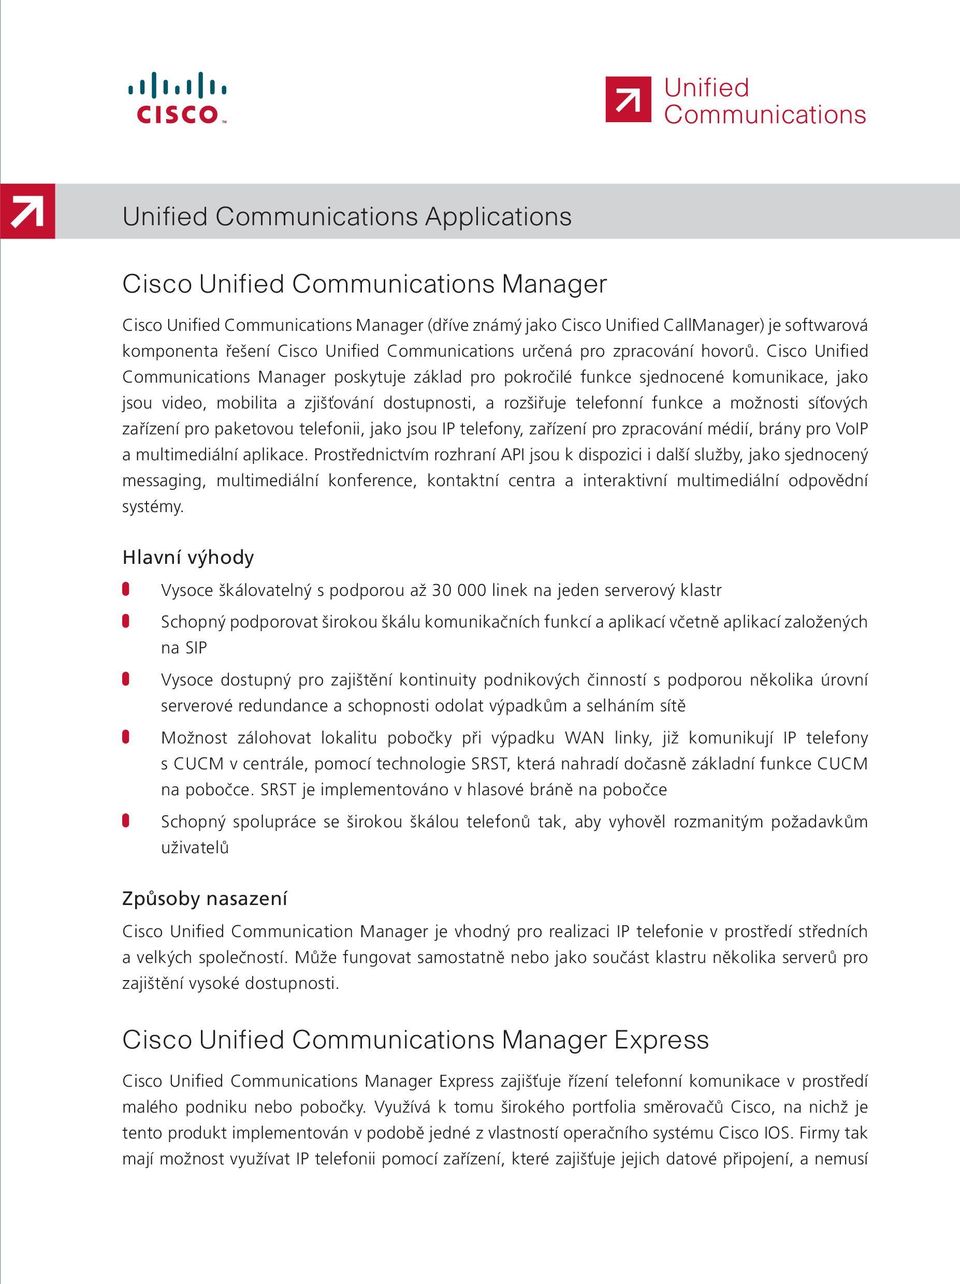 Cisco Unified Communications Manager poskytuje základ pro pokročilé funkce sjednocené komunikace, jako jsou video, mobilita a zjišťování dostupnosti, a rozšiřuje telefonní funkce a možnosti síťových